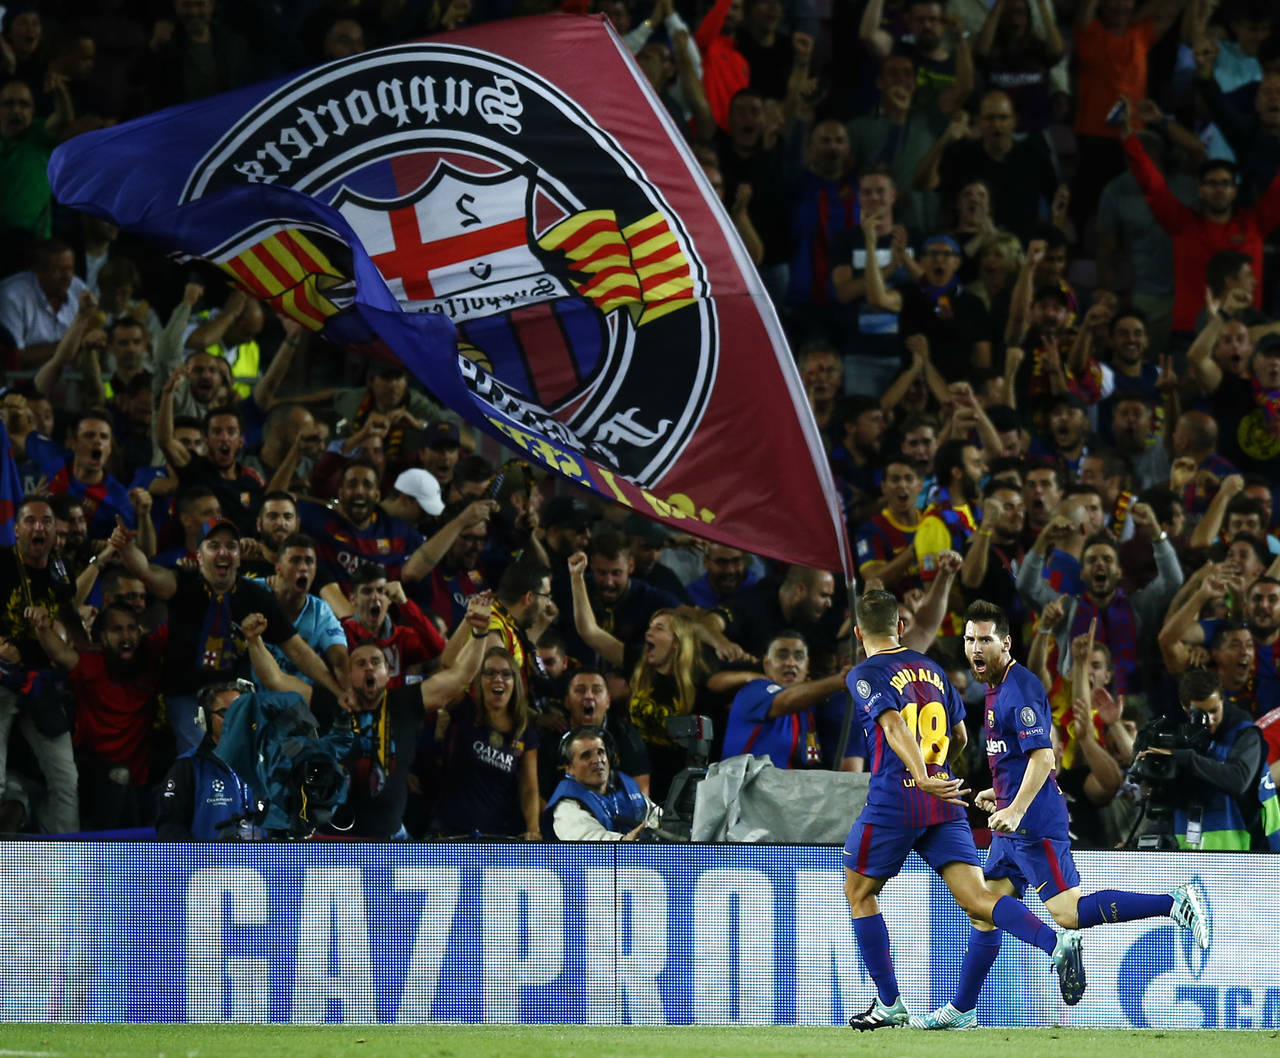 De la mano del argentino Lio Messi, Barcelona dio una cátedra de futbol para derrotar con un categórico 3-0 a la Juventus de Turín al iniciar la fase de grupos de la Champions League. (AP)